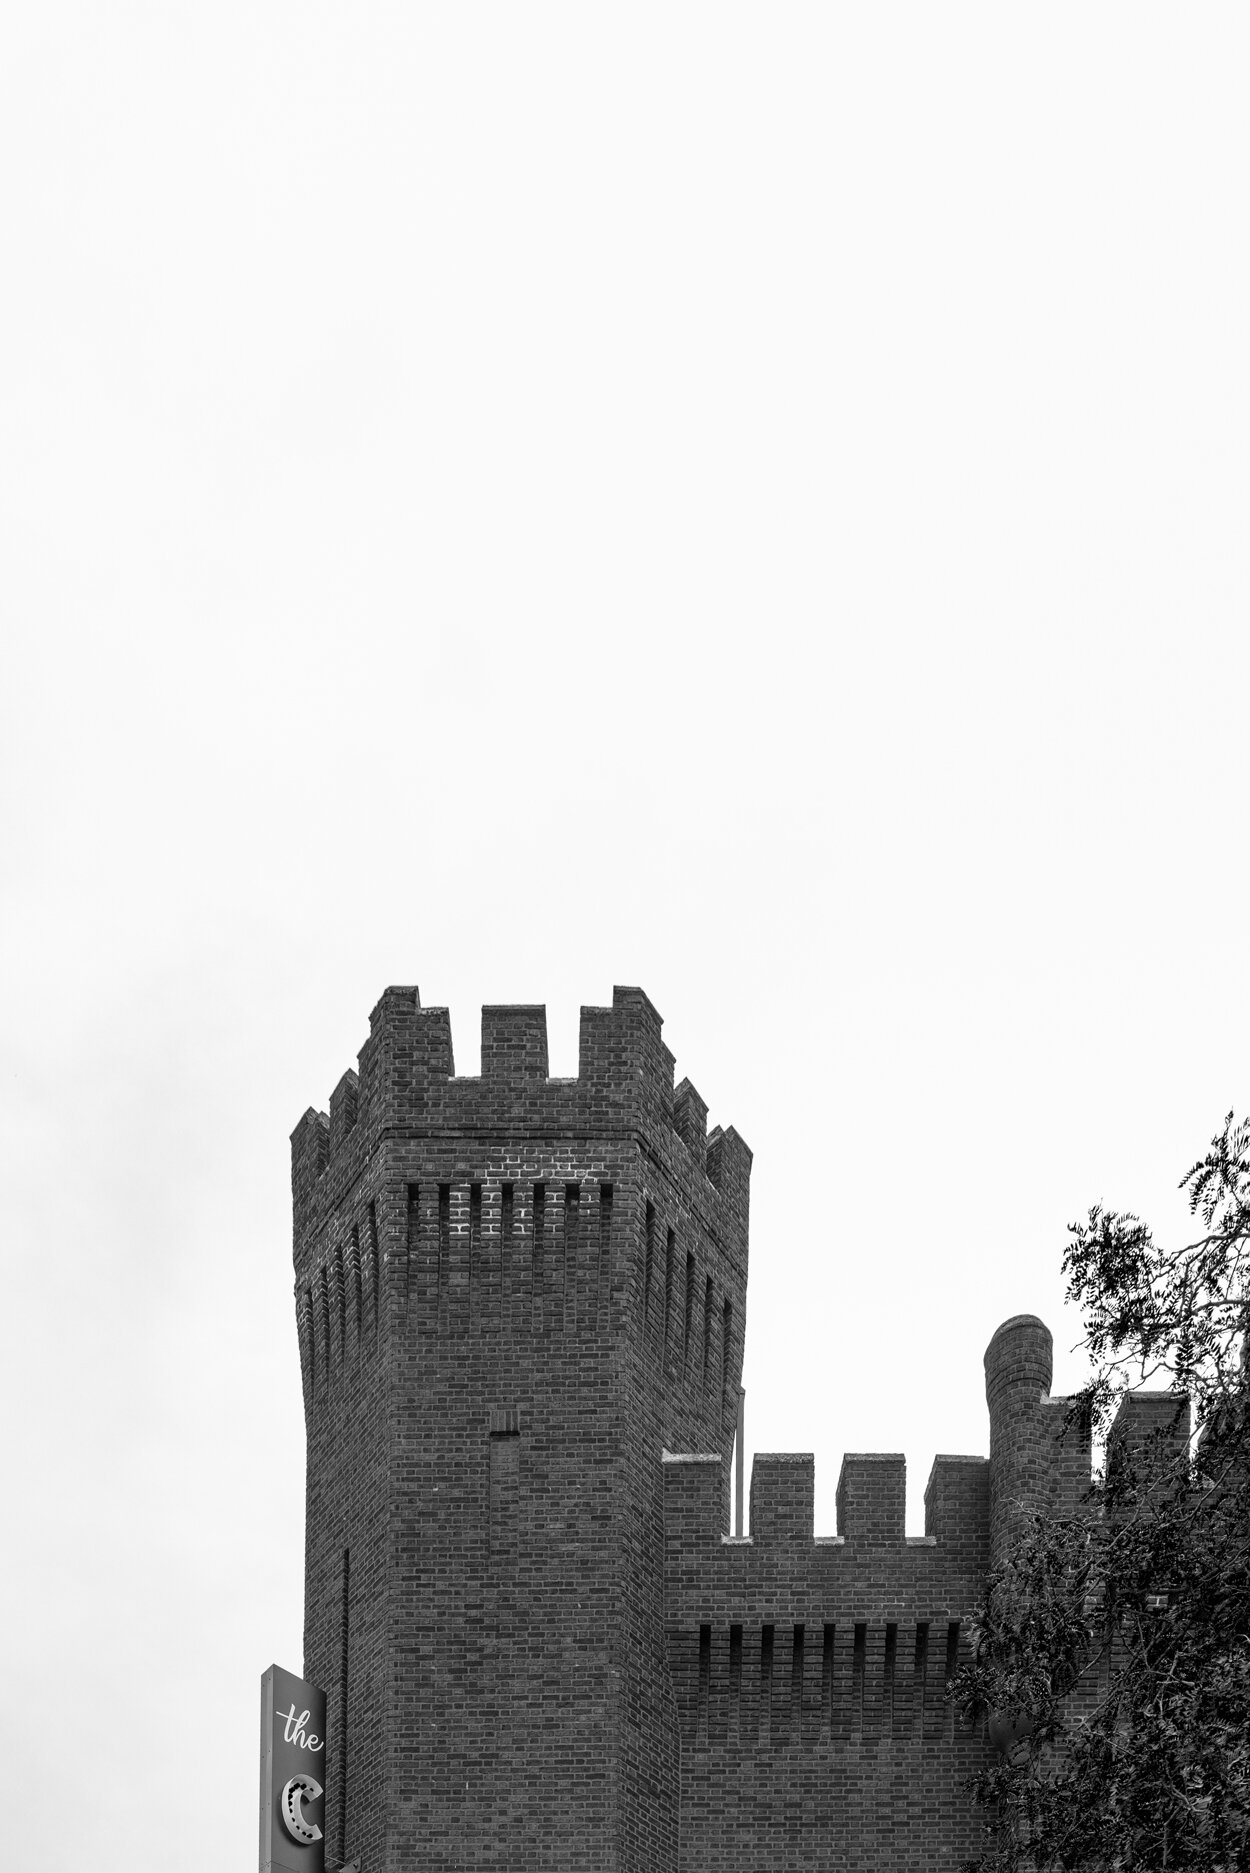 tsos vertical castle turret (resized).jpg